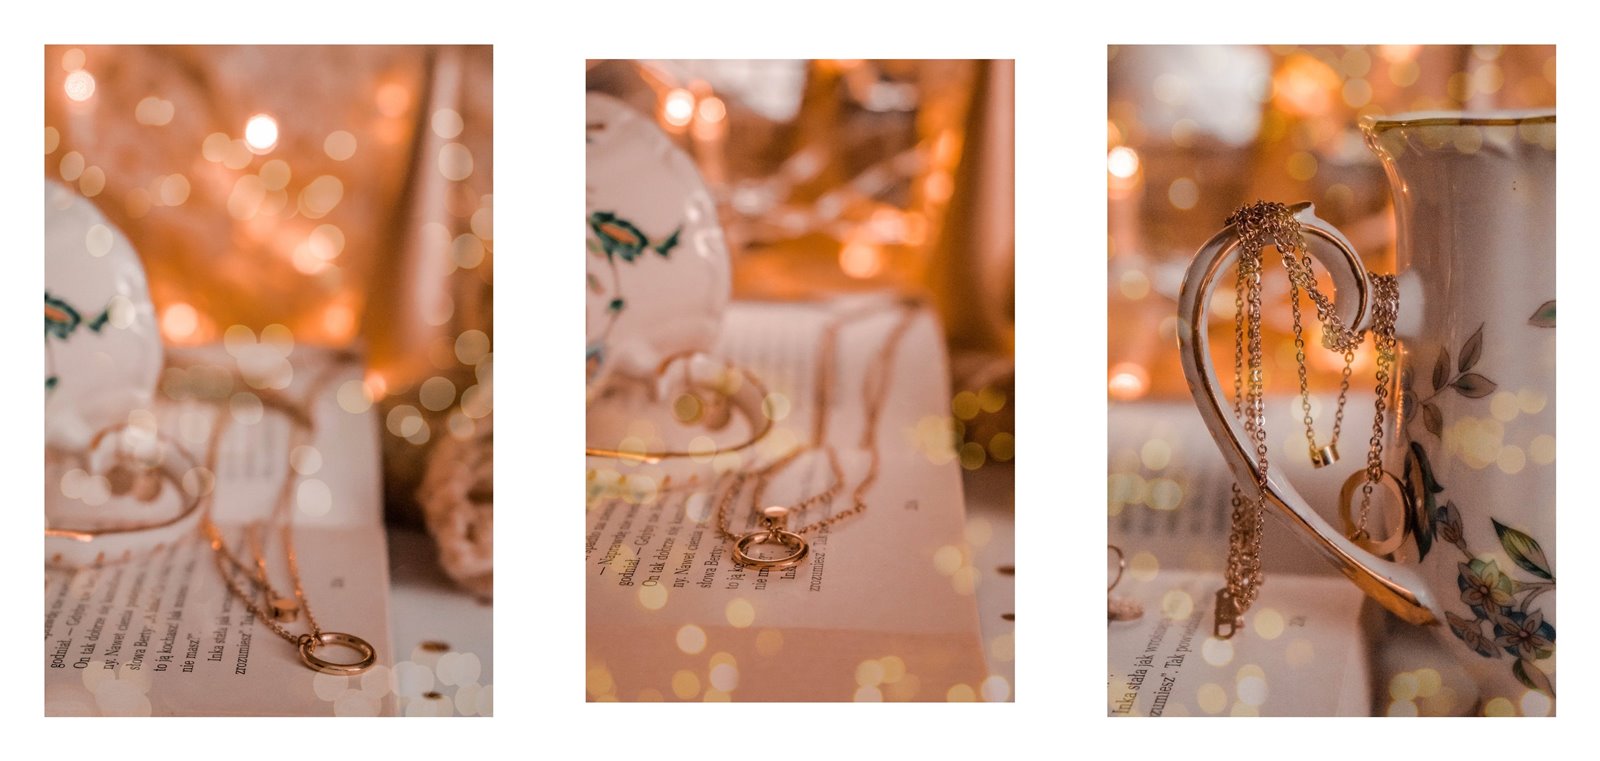 pomysł na walentynkowy prezent z okazji dnia kobiet modna biżuteria w 2019 roku sklepu online jubiler online  zbiżuterią złotą łańcuszek celebrytka kolczyki kółka gdzie kupić ładną biżuterię łódź blog moda fashion